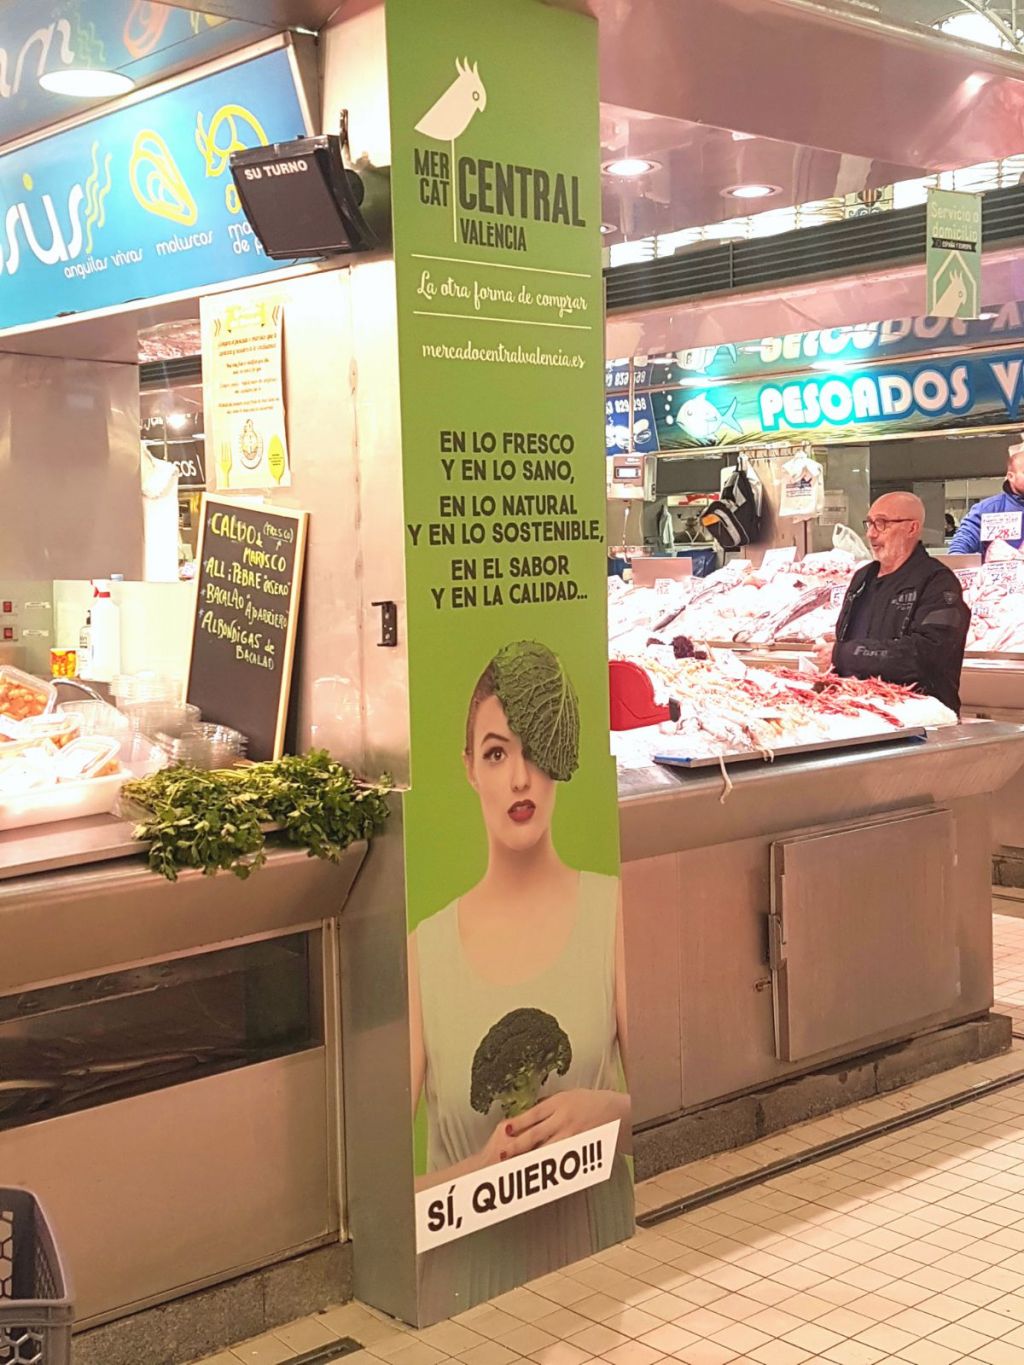  El Mercado Central de Valencia promociona la frescura, calidad, sabor y sostenibilidad de sus productos 